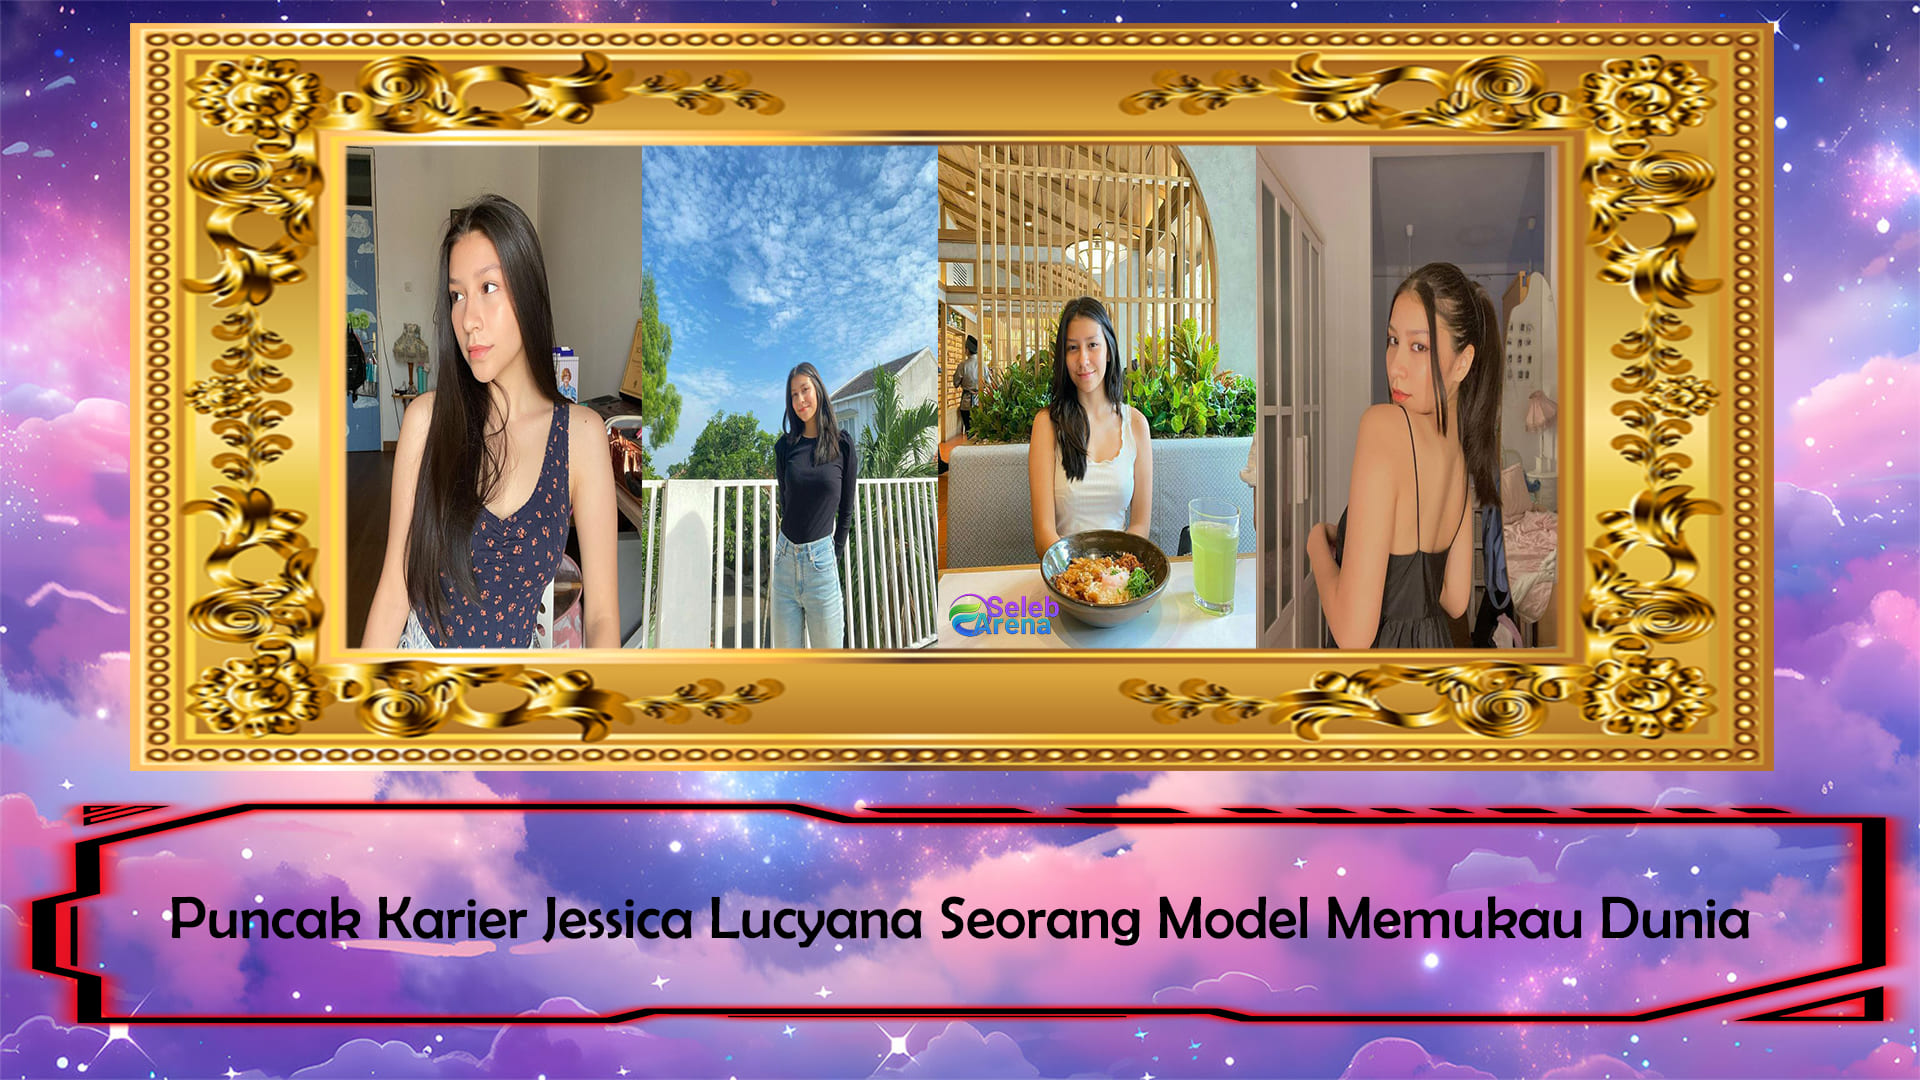 Puncak Karier Jessica Lucyana Seorang Model Memukau Dunia